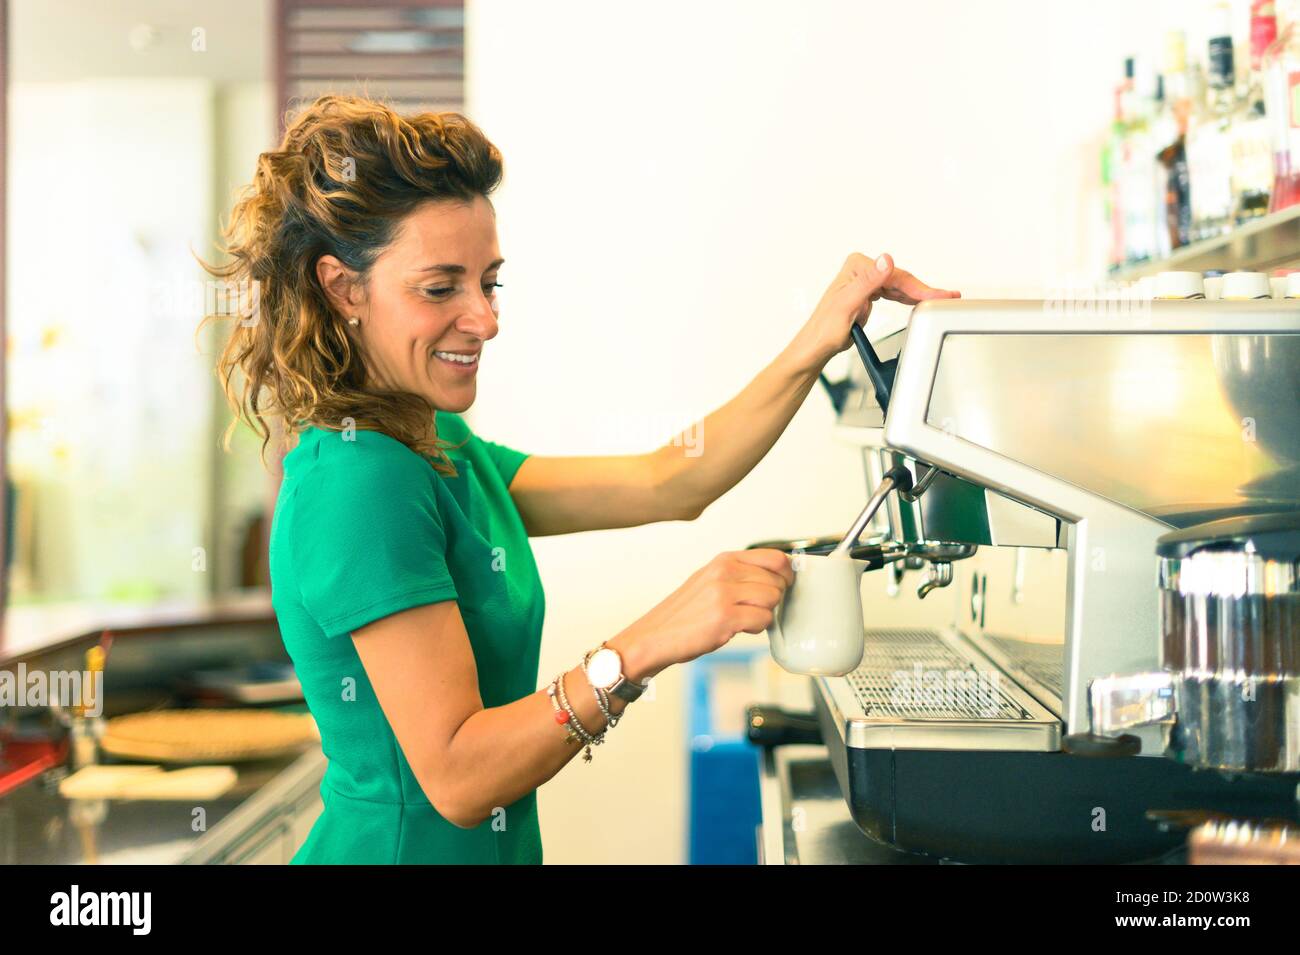 Barkeeper Dame, Vorbereitung Kaffee trinken mit Espresso-Maschine im Shop Café - Frau halten Porzellan Milchkrug in der Hand - Lifestyle im Coffee Shop Konzept Stockfoto